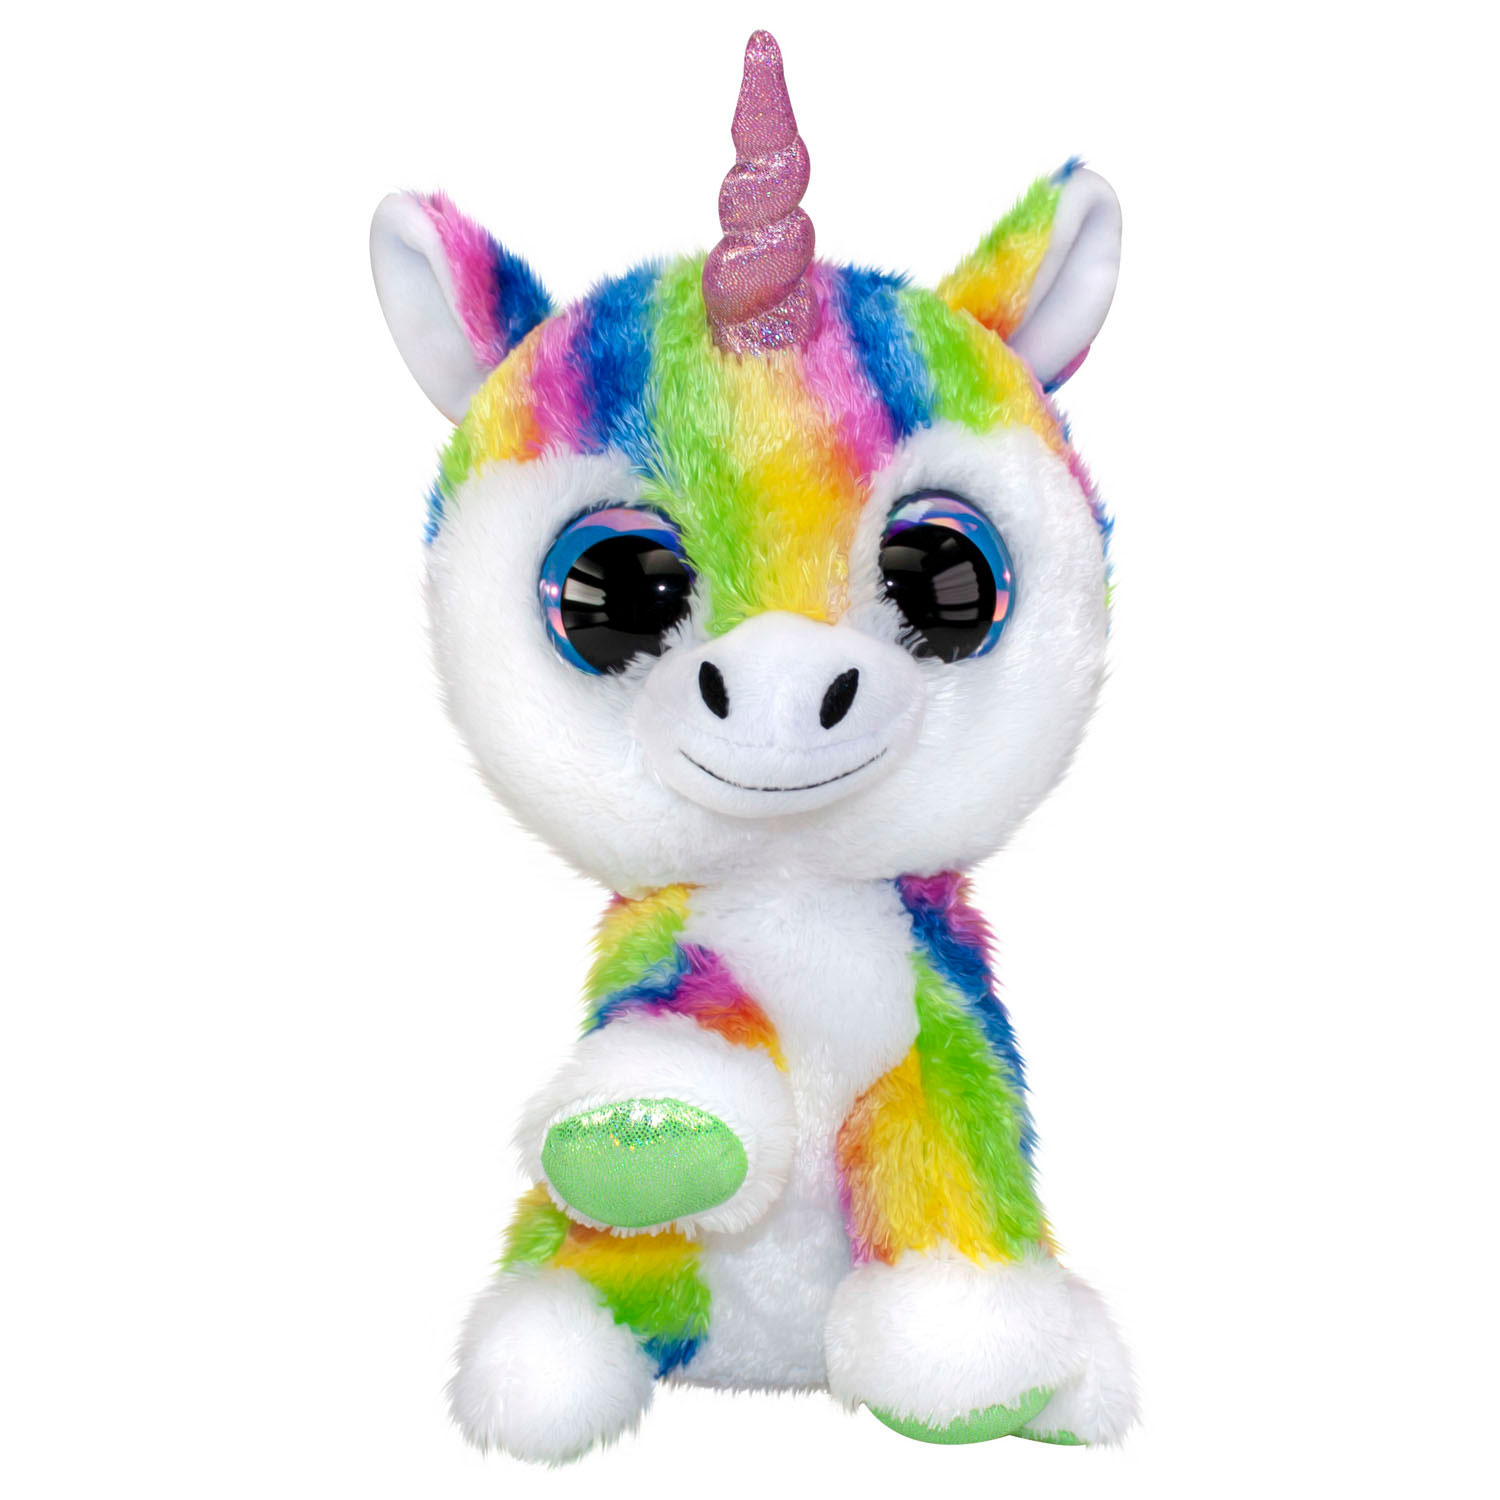 Ingang Eerlijkheid Visser Lumo Stars Knuffel - Unicorn Dream, 24cm | Thimble Toys